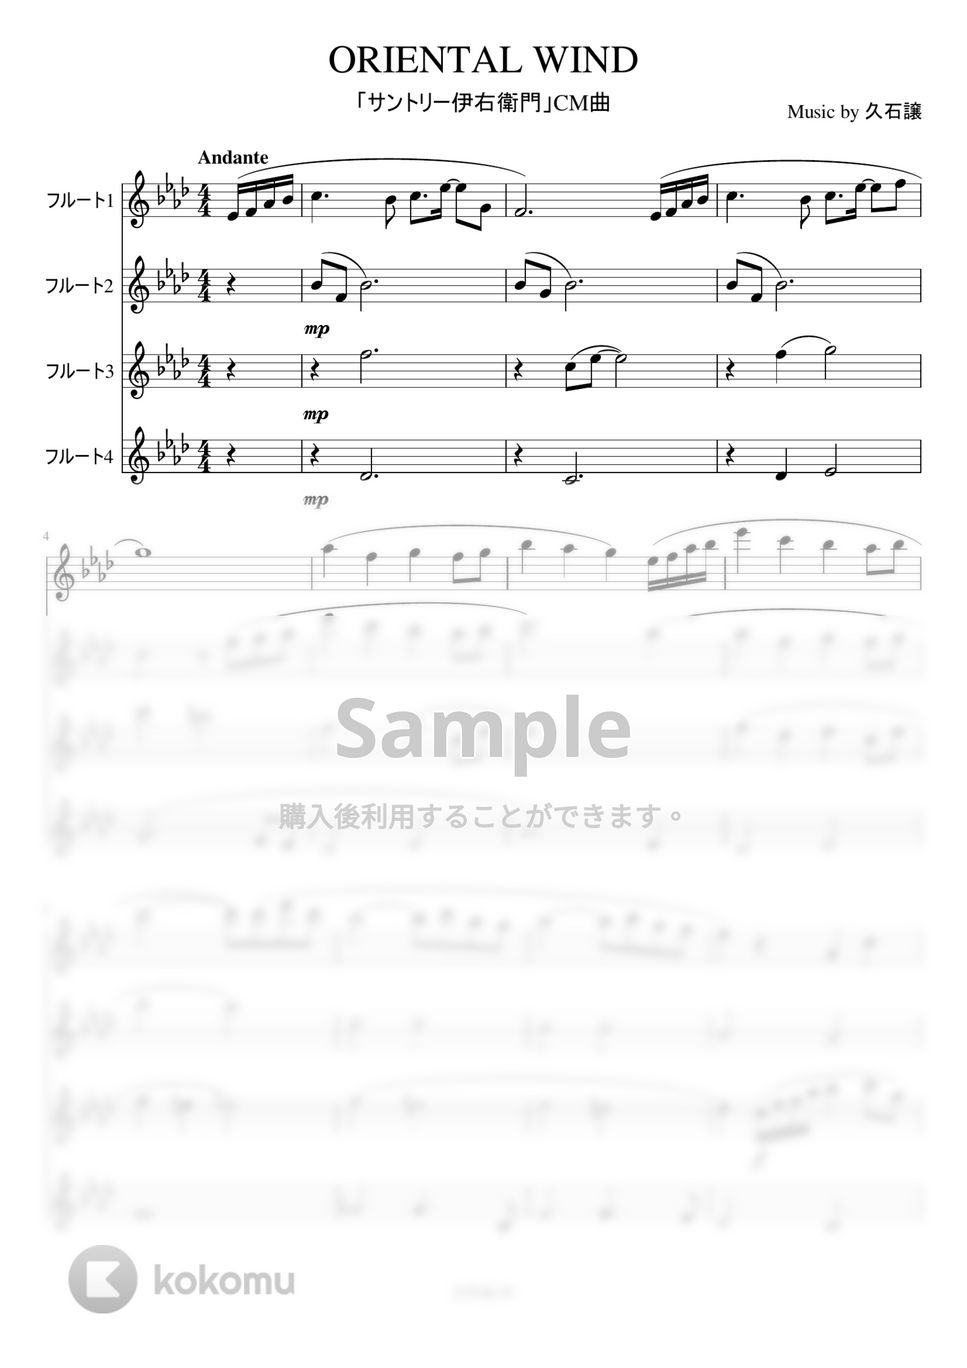 久石譲 - Oriental Wind (フルート四重奏) by もりたあいか